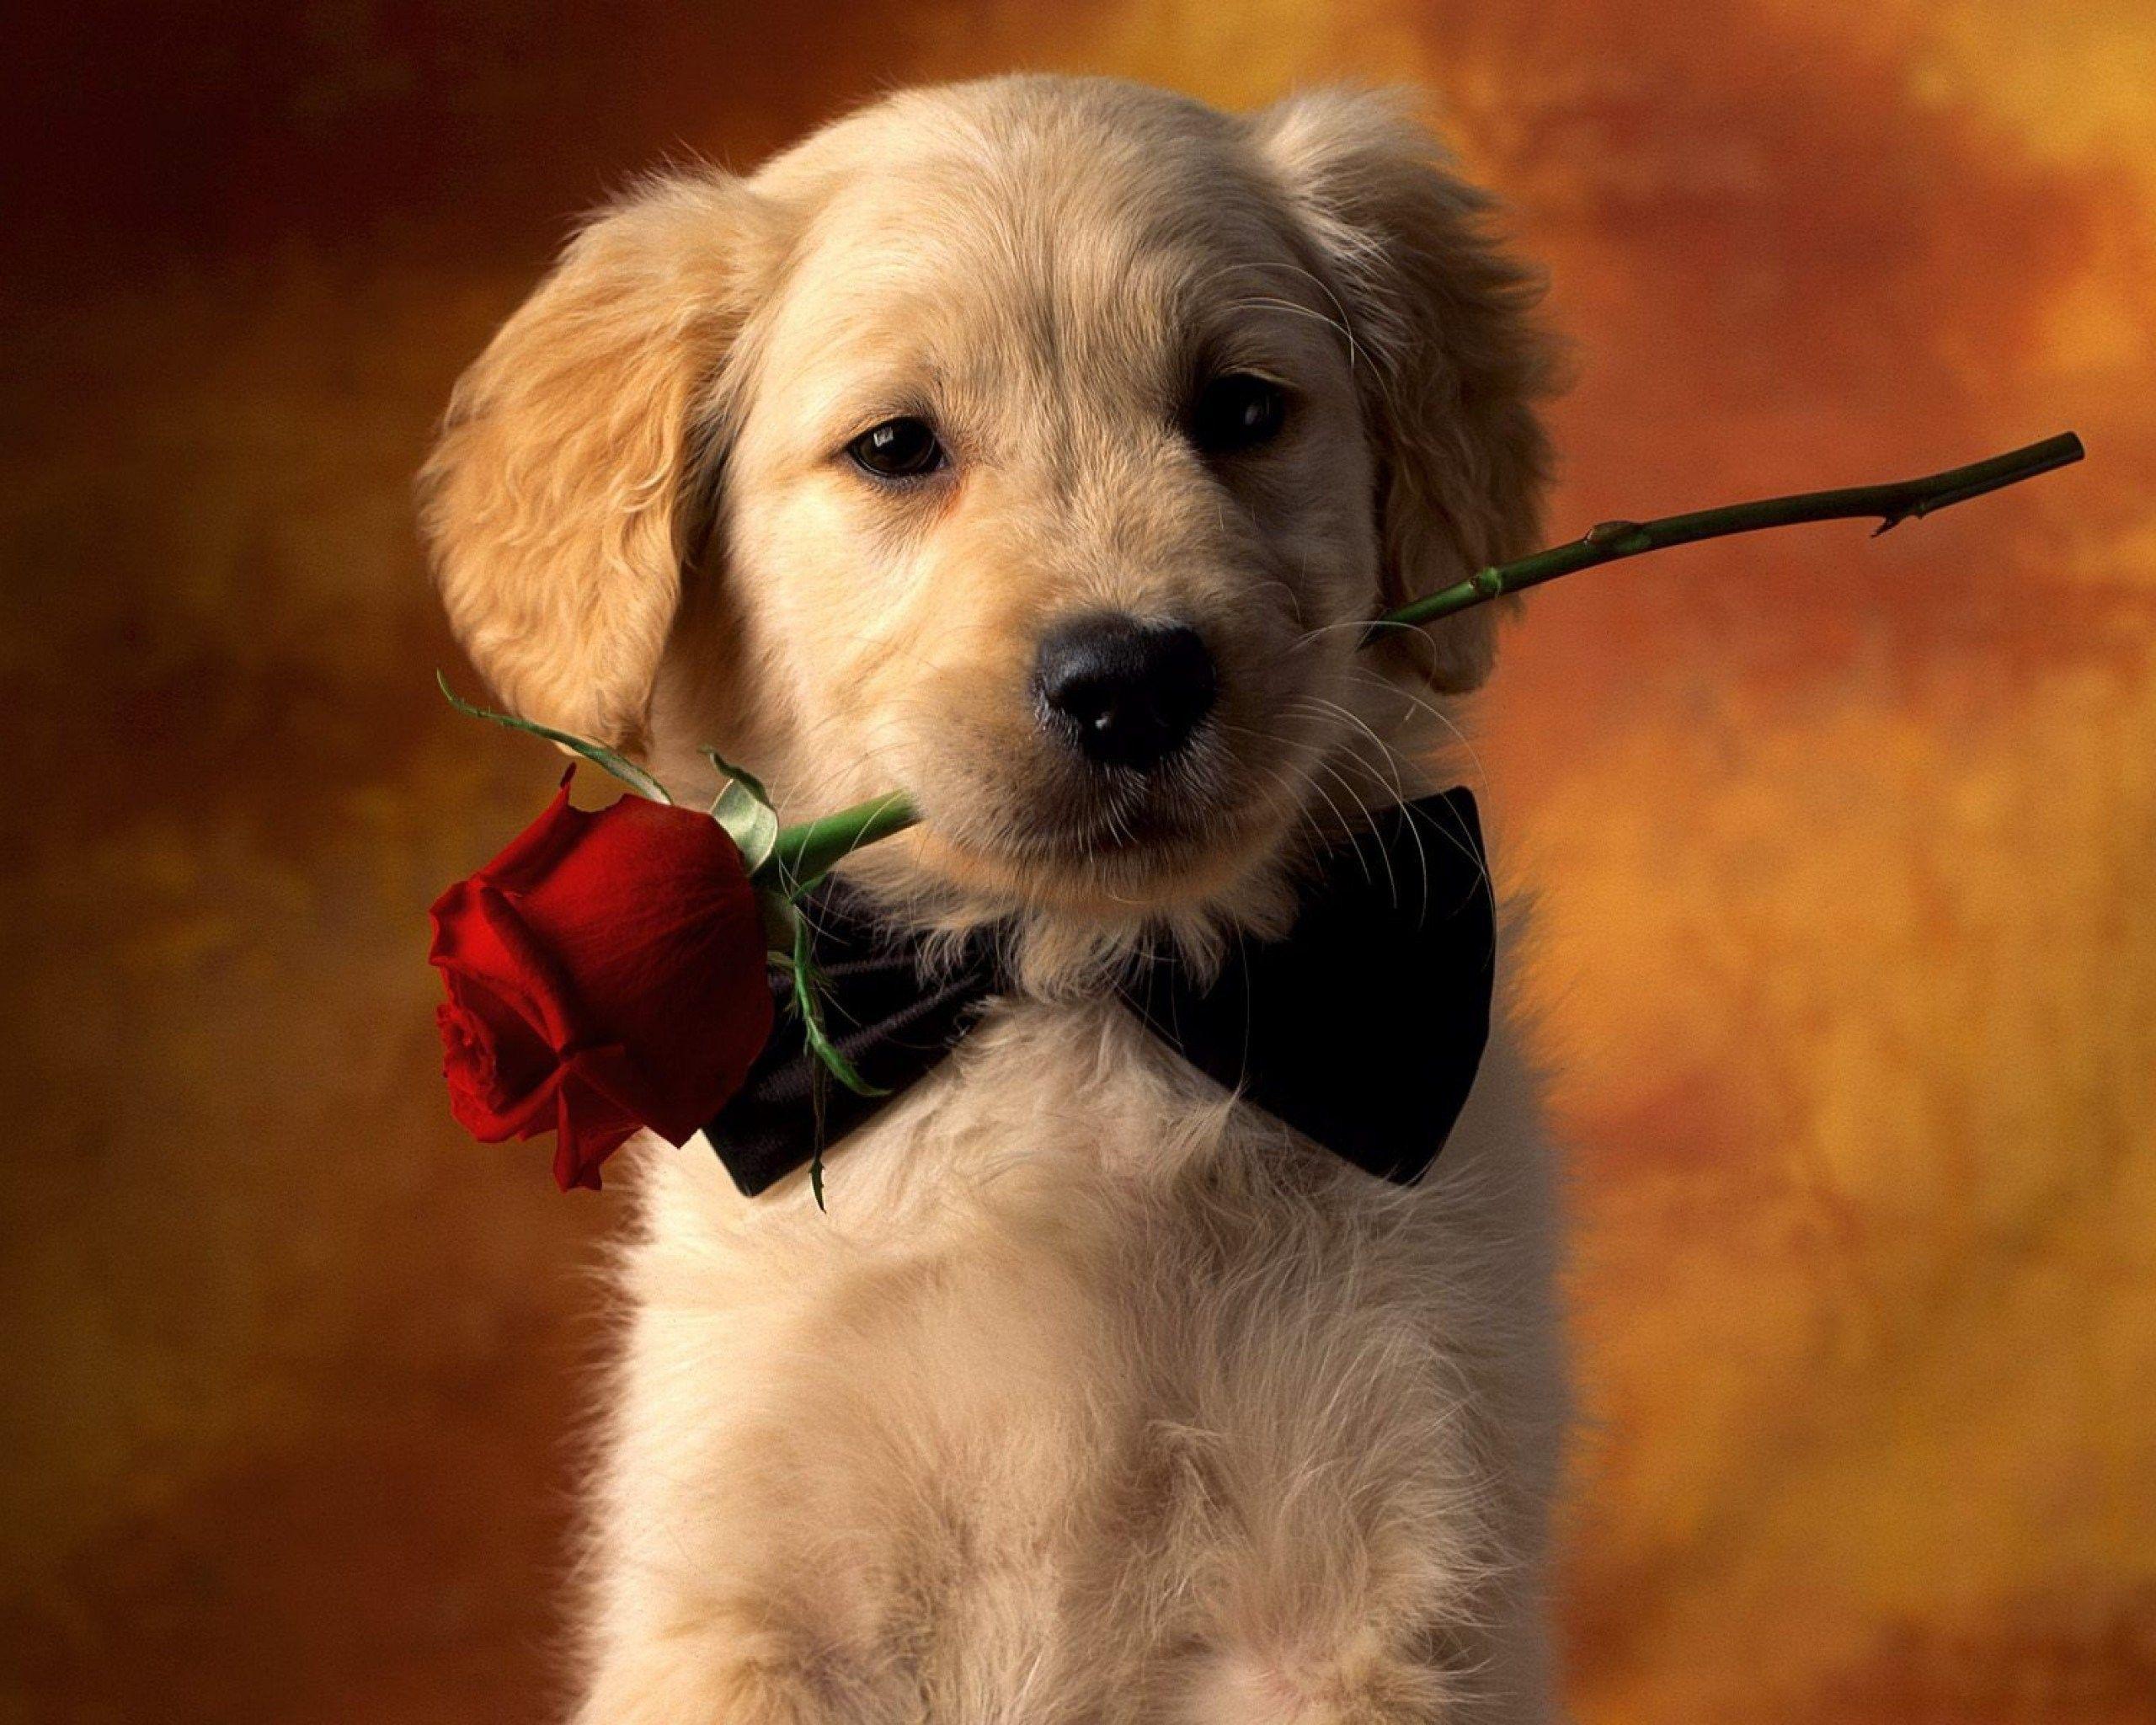 Valentine's Day Puppy Wallpaper Free Valentine's Day